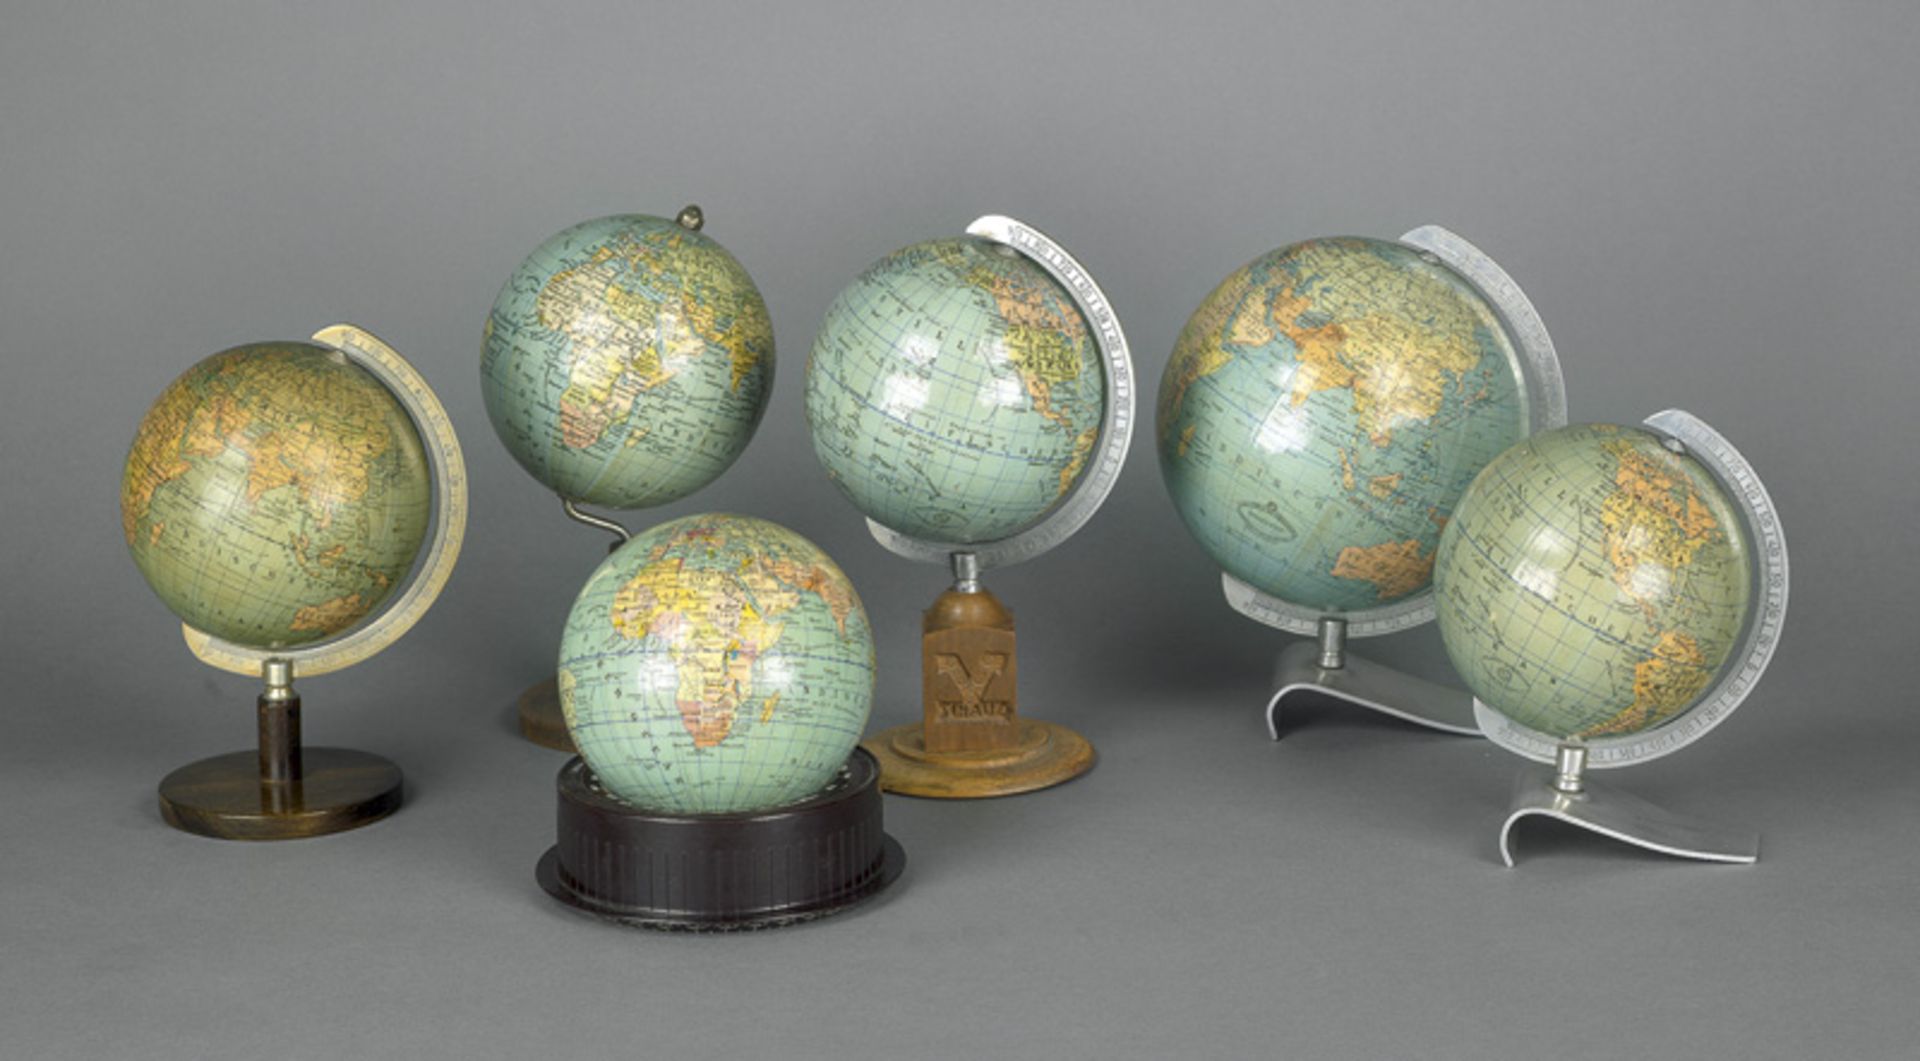 Erdgloben-Sammlung: Sammlung von 6 kleinen terrestrischen Globen unterschied...